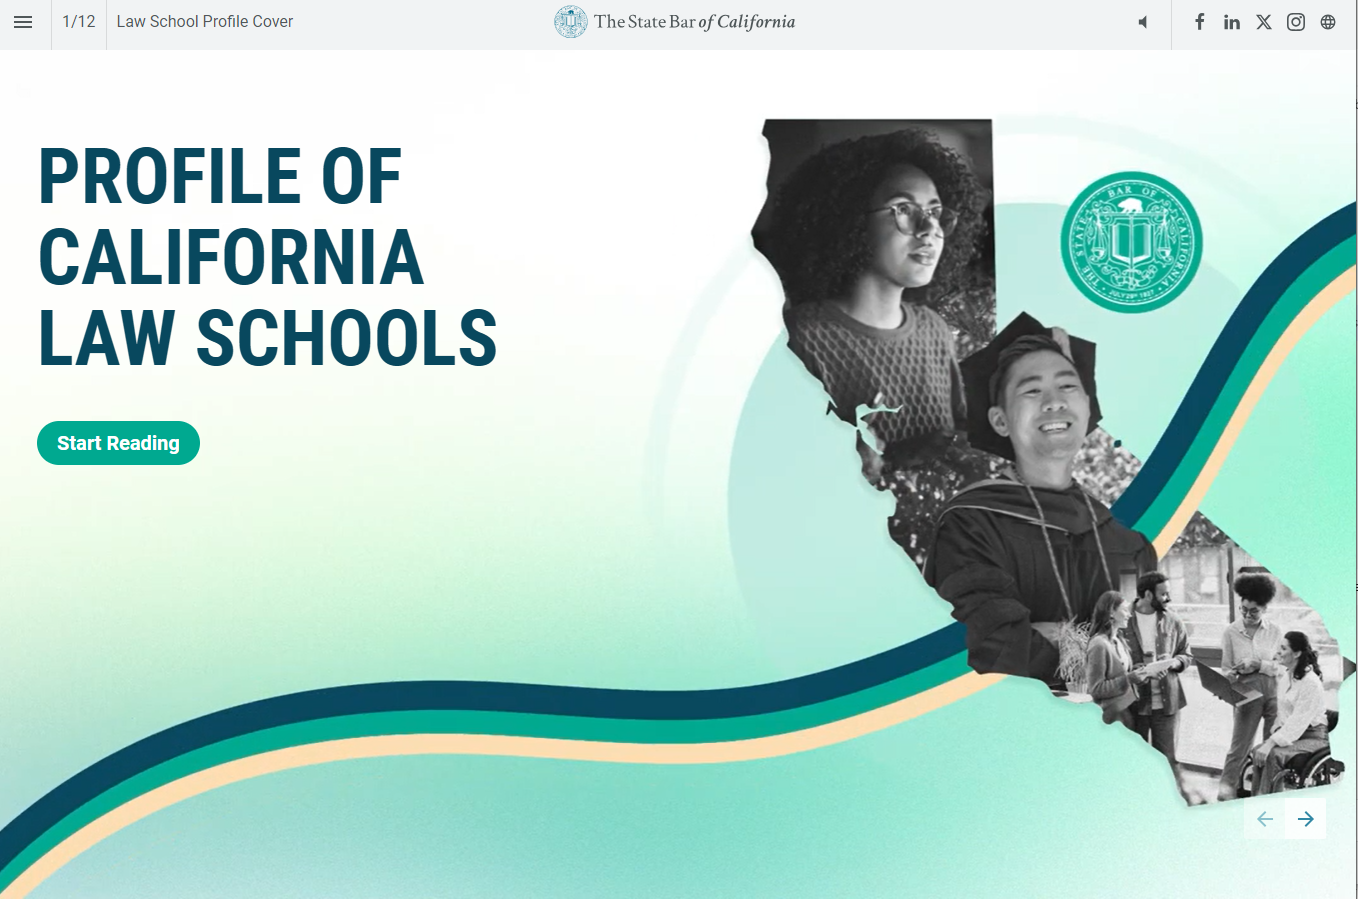 Cover image: Profile of California Law Schools